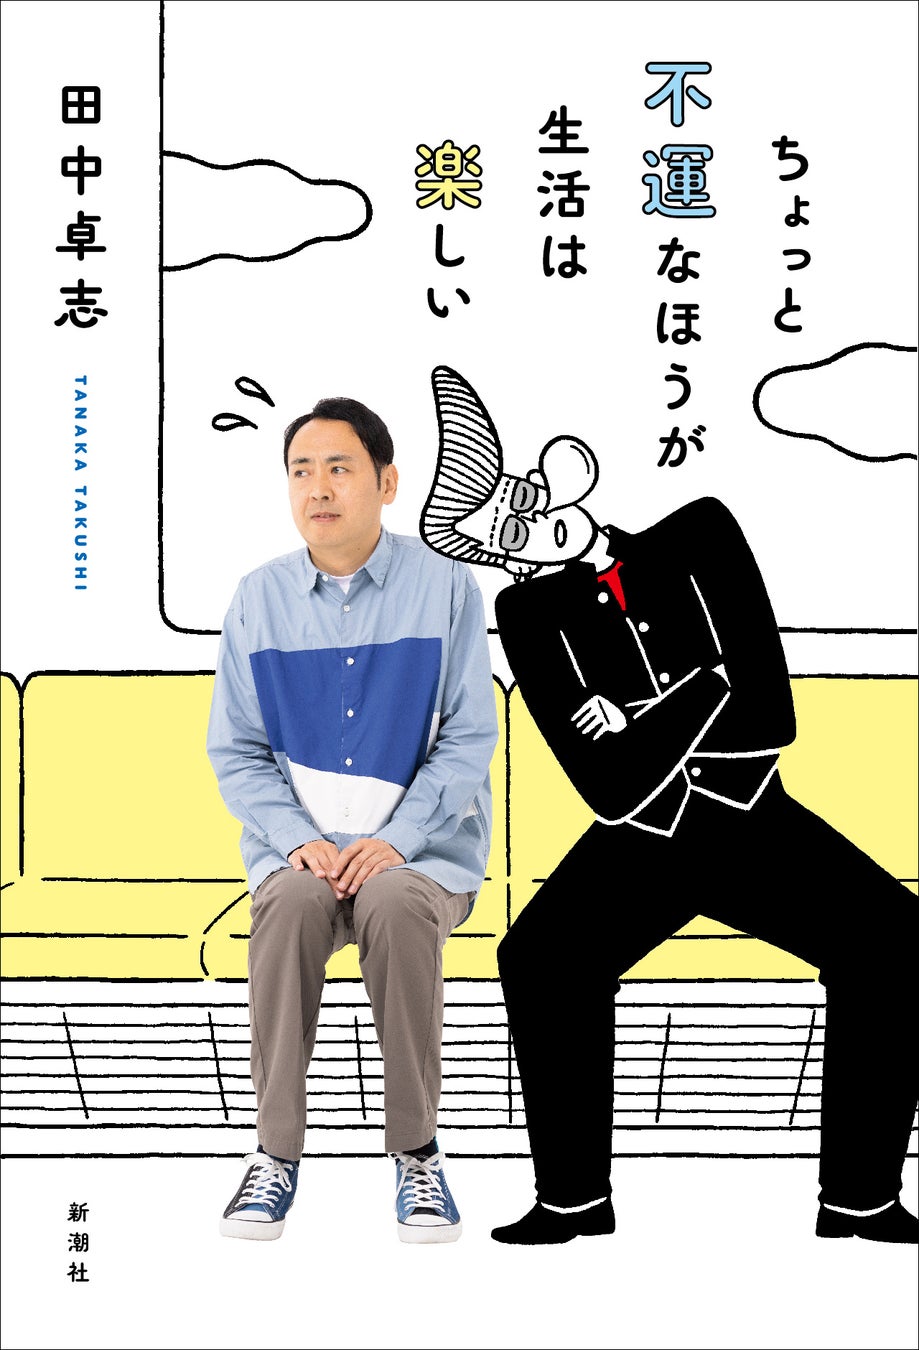 アンガールズ・田中卓志さん初のエッセイ集『ちょっと不運なほうが生活は楽しい』カバーデザイン公開！